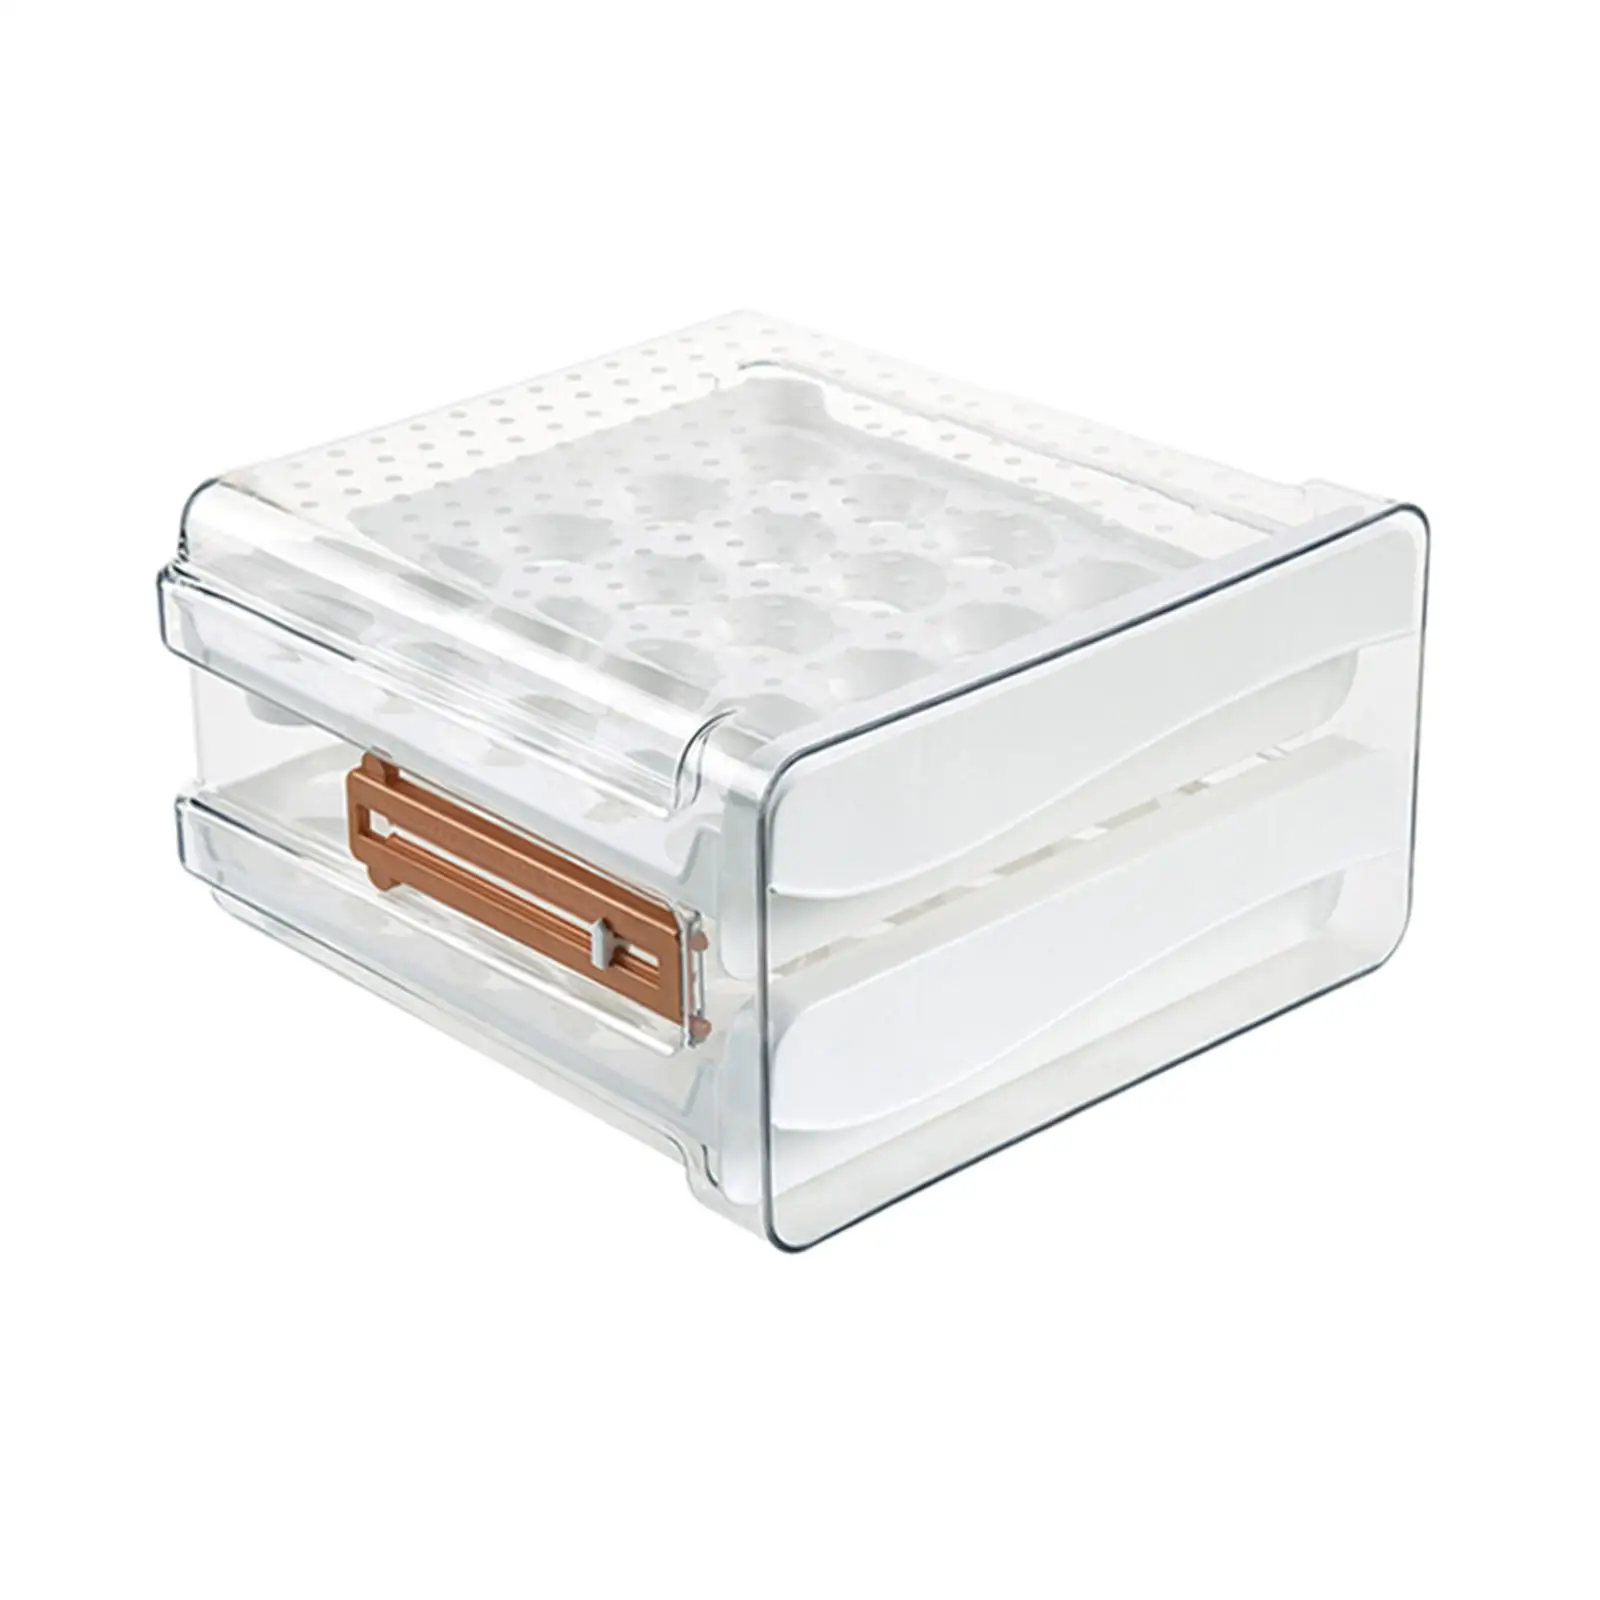 Refrigerator Egg Holder Stackable Egg Organizer Bin for Refrigerator Cabinet